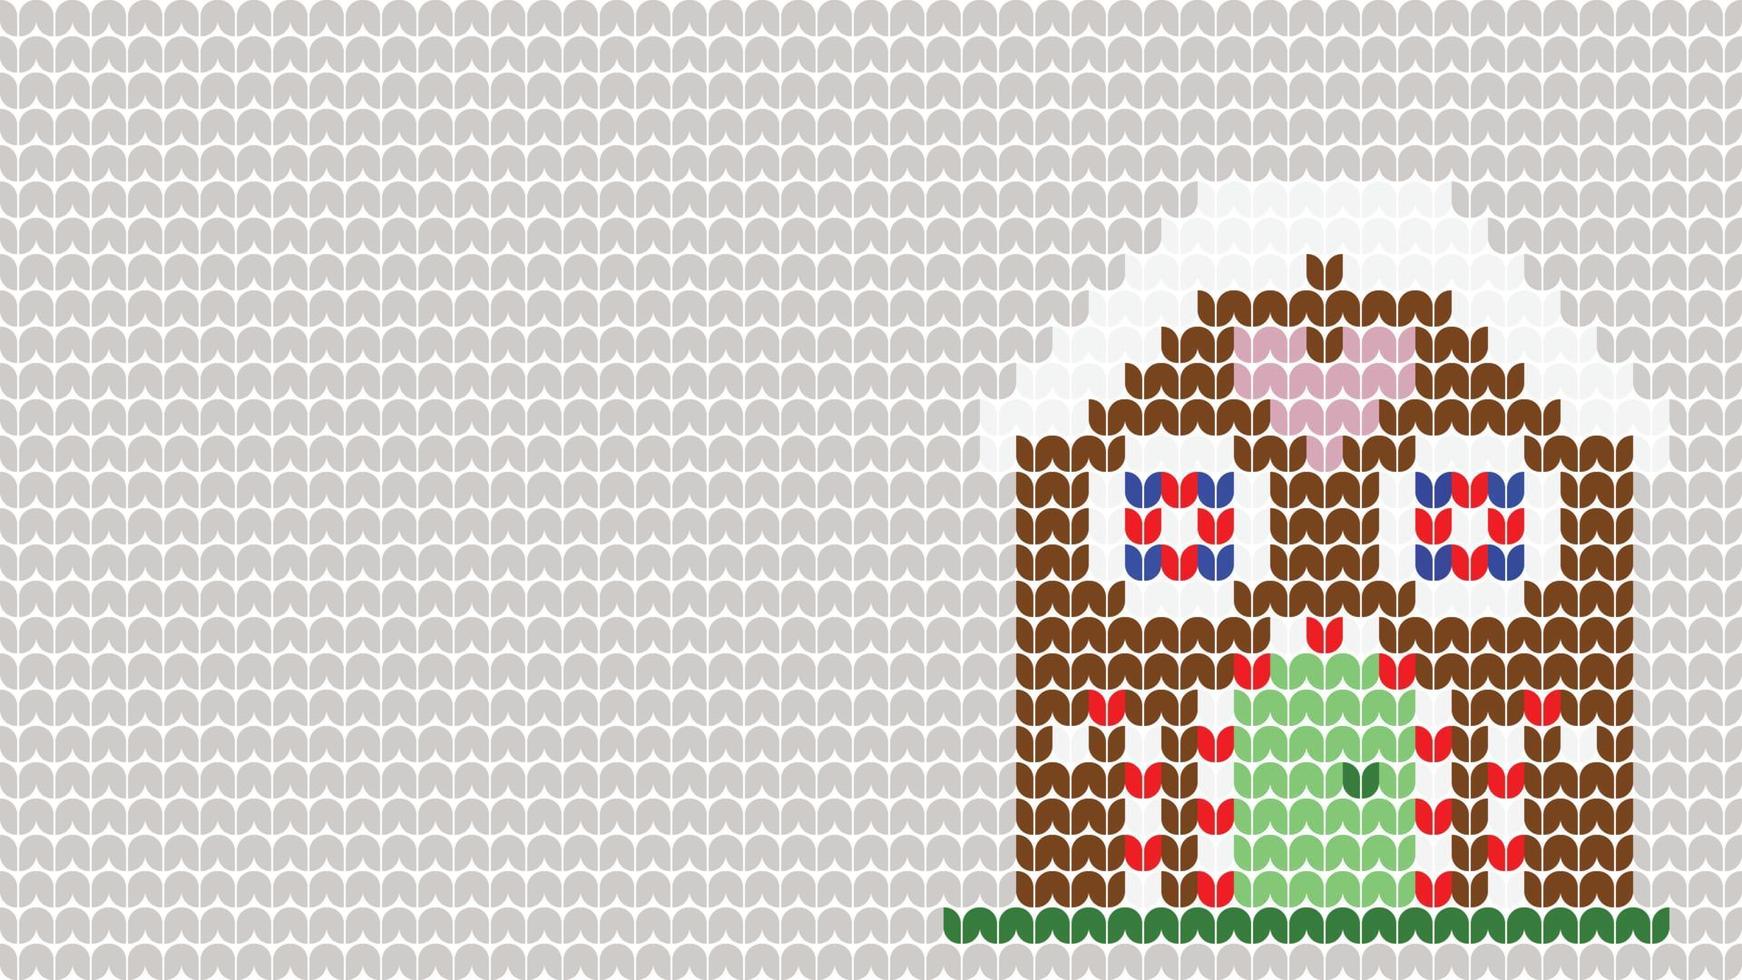 Tricot maison motif de fond frontière sur fond gris, tricot motif ethnique border joyeux noël et joyeux jours d'hiver vecteur poste